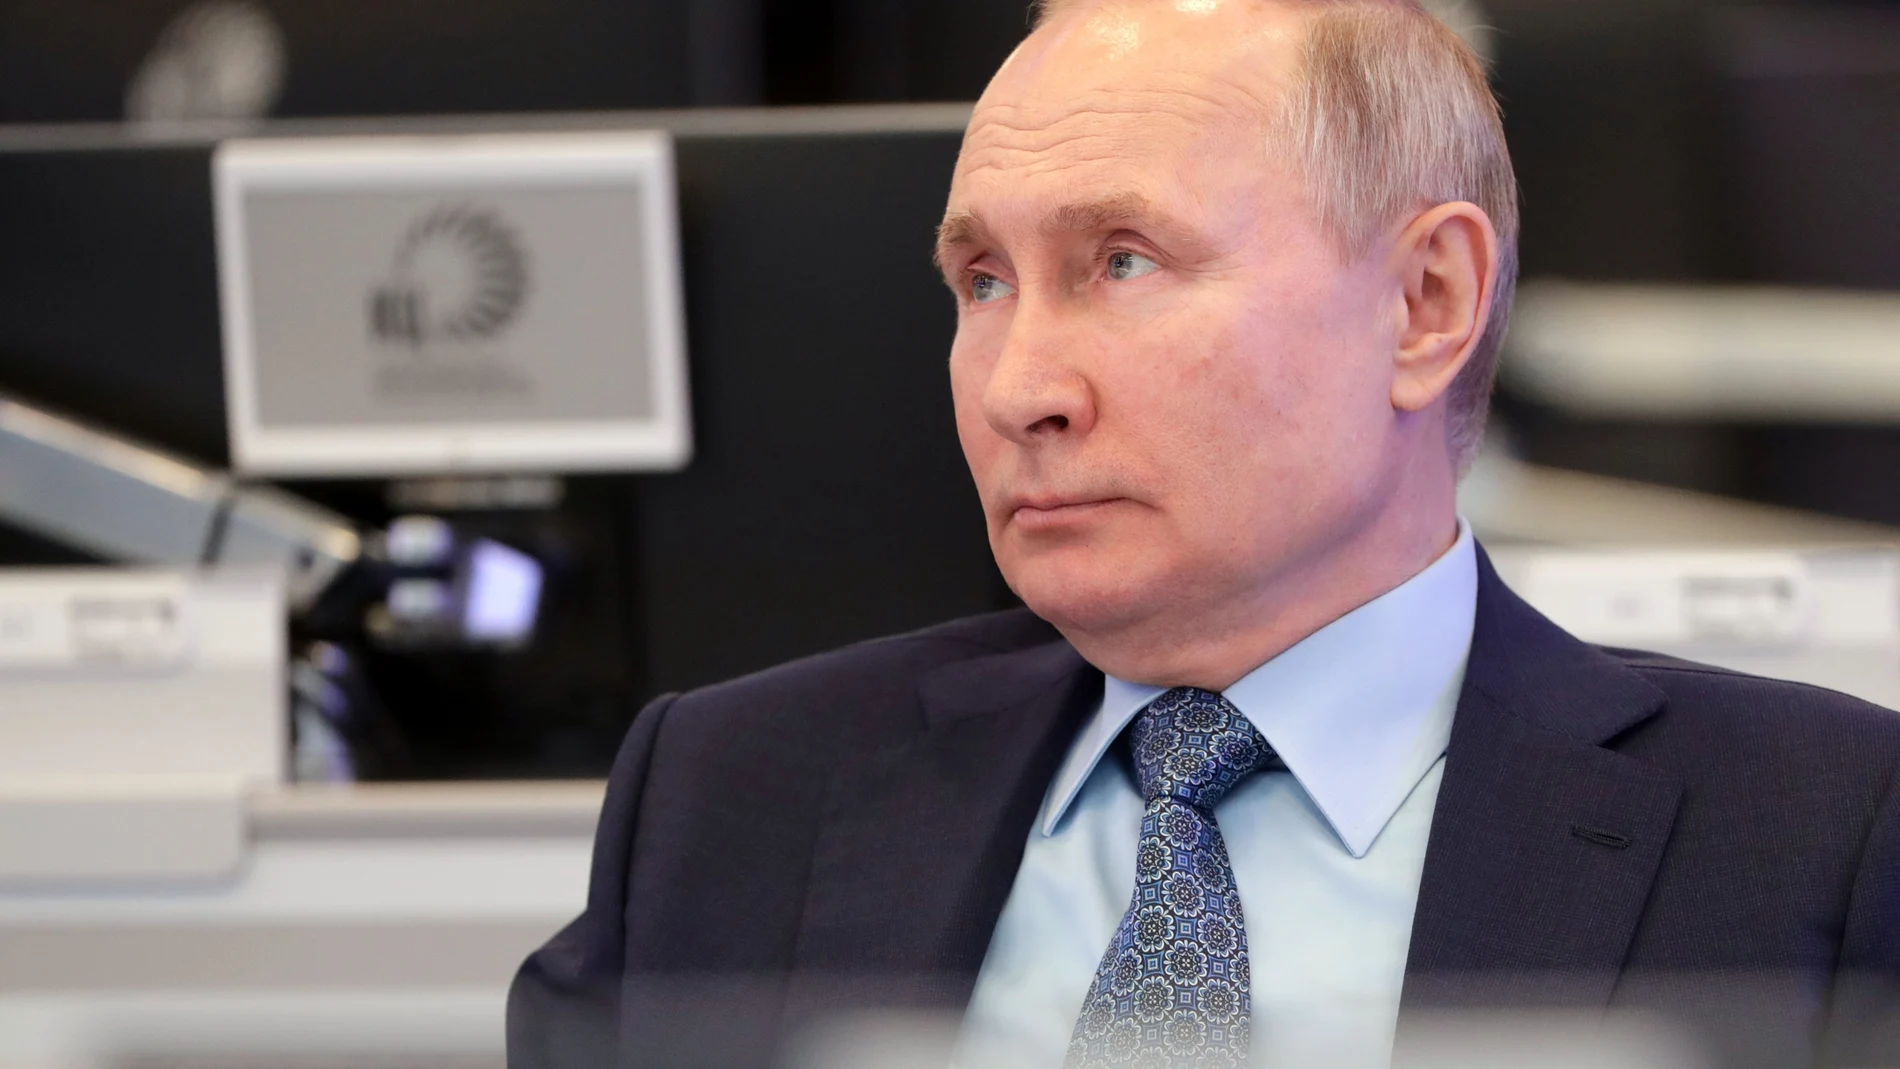 El presidente Putin visita el Centro de Coordinación del Gobierno ruso este martes 13 de abril